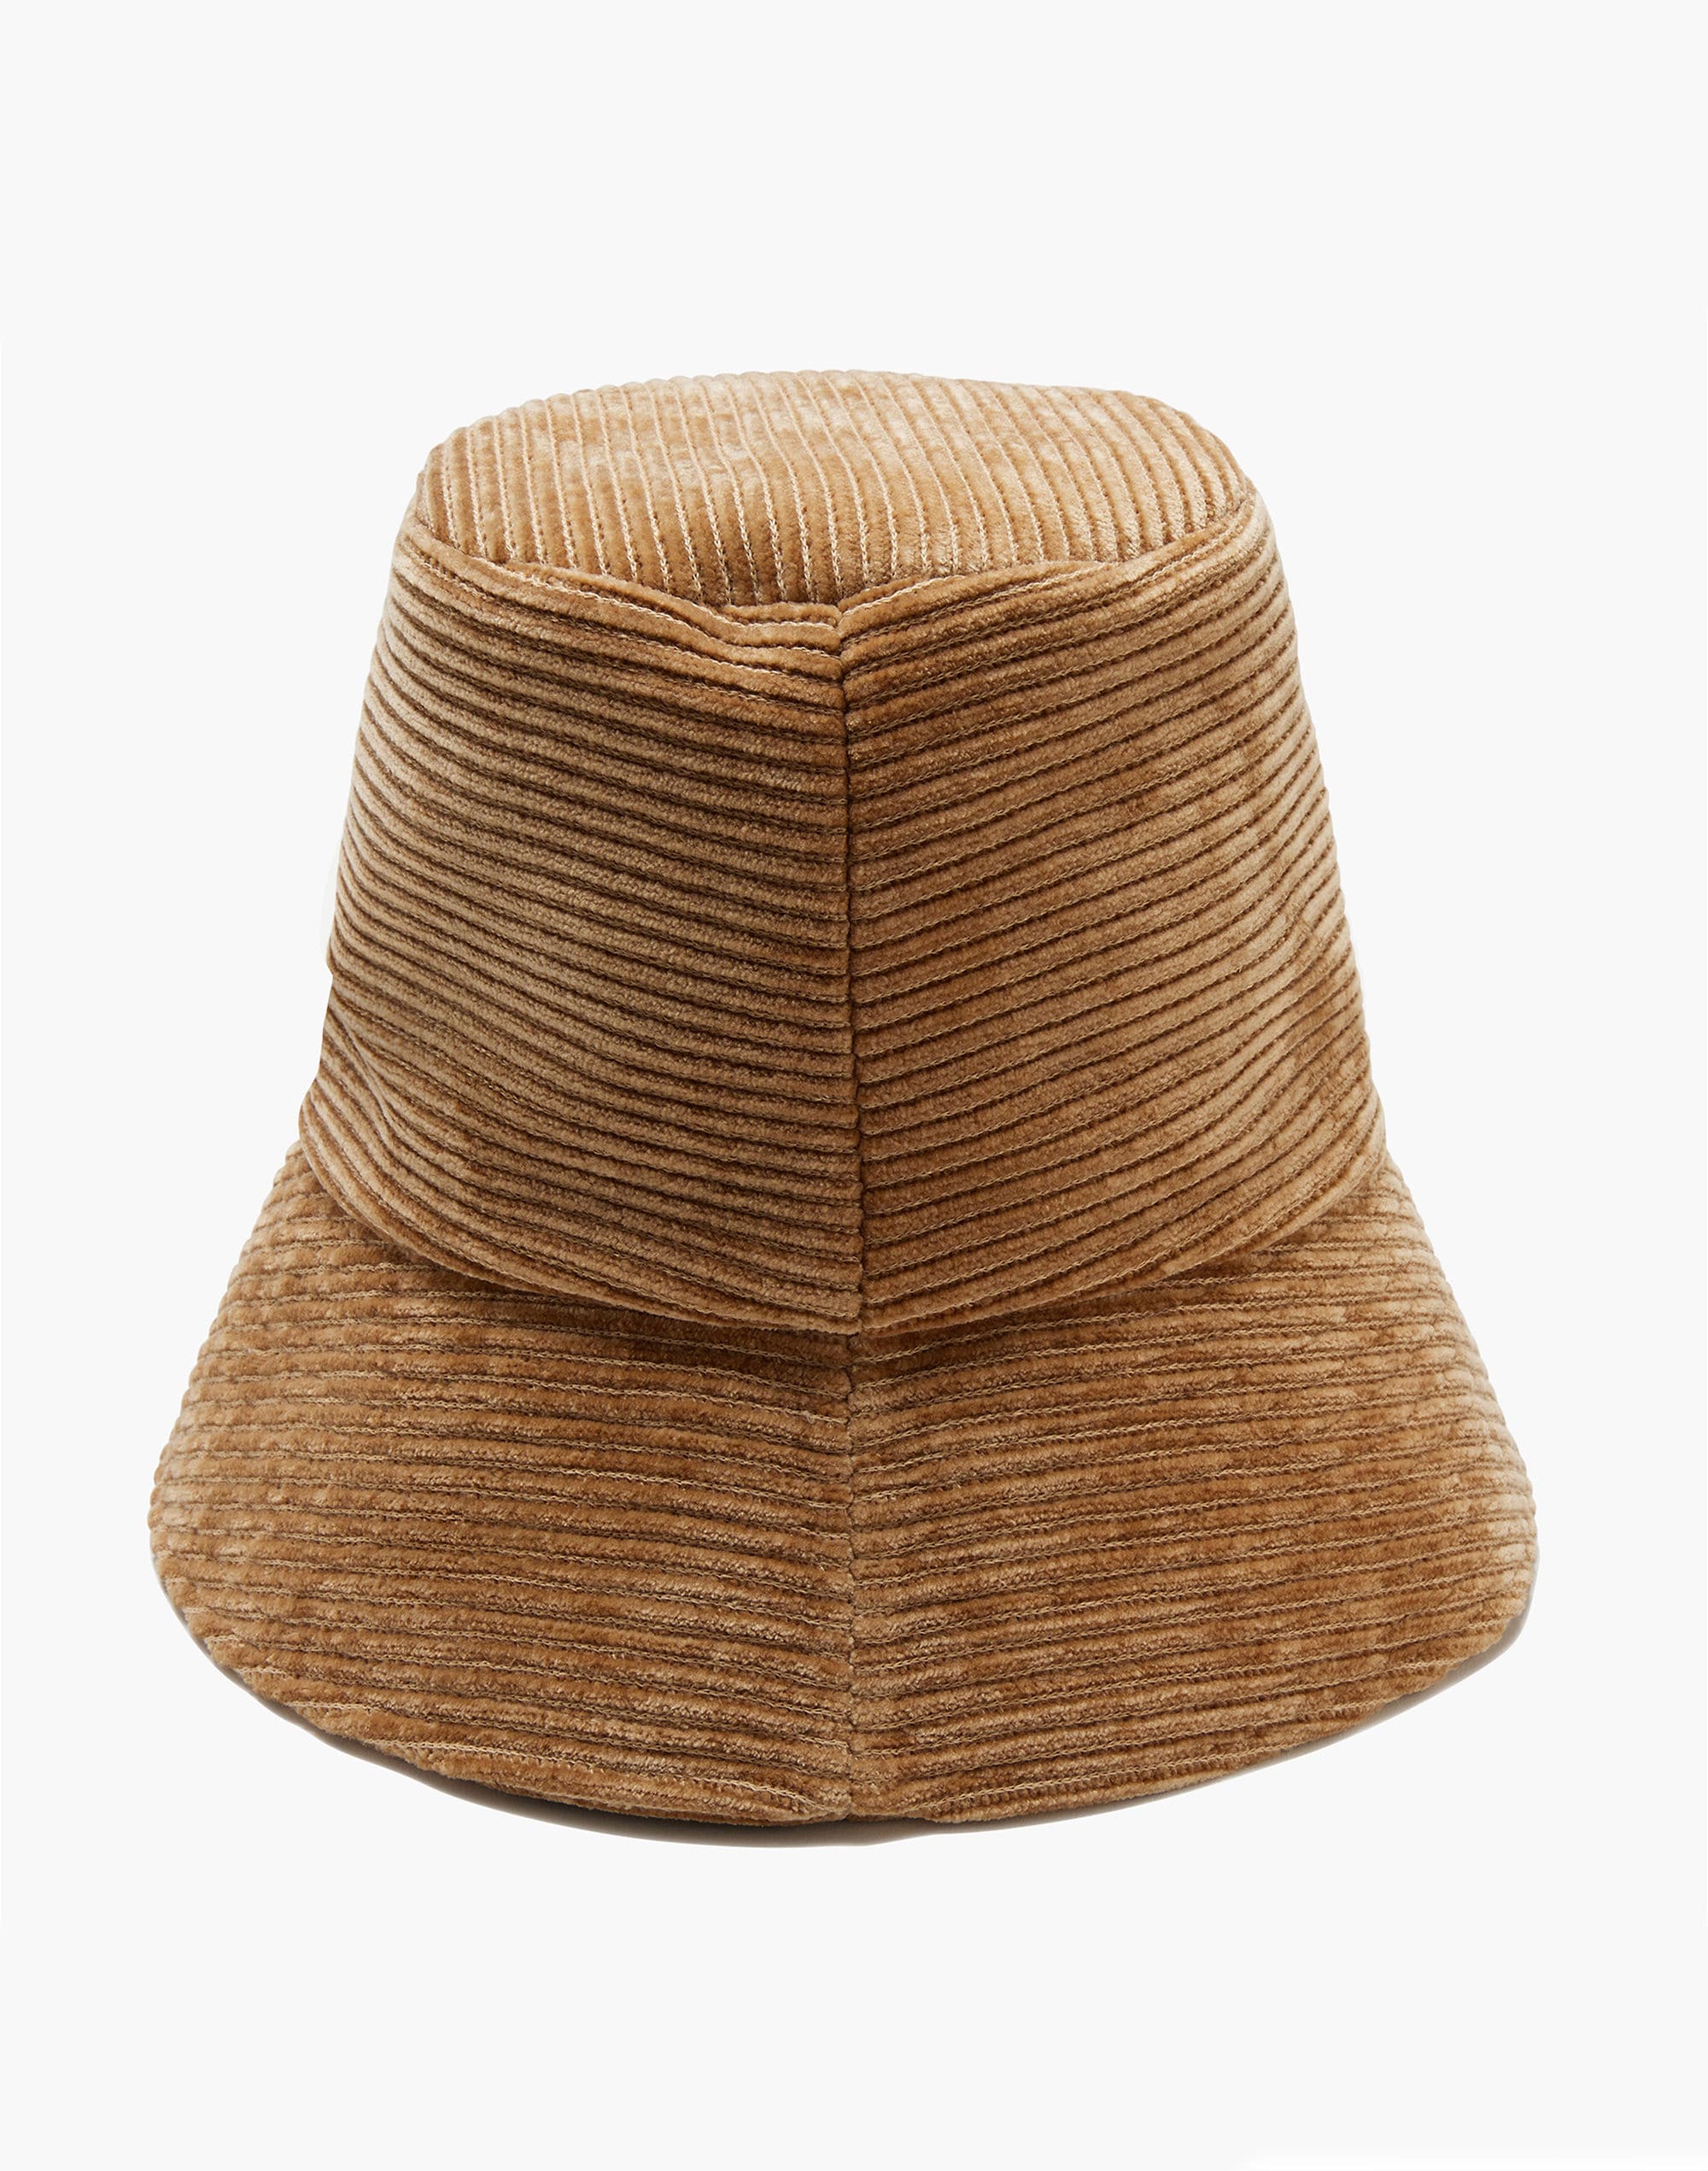 Wyeth Perry Hat